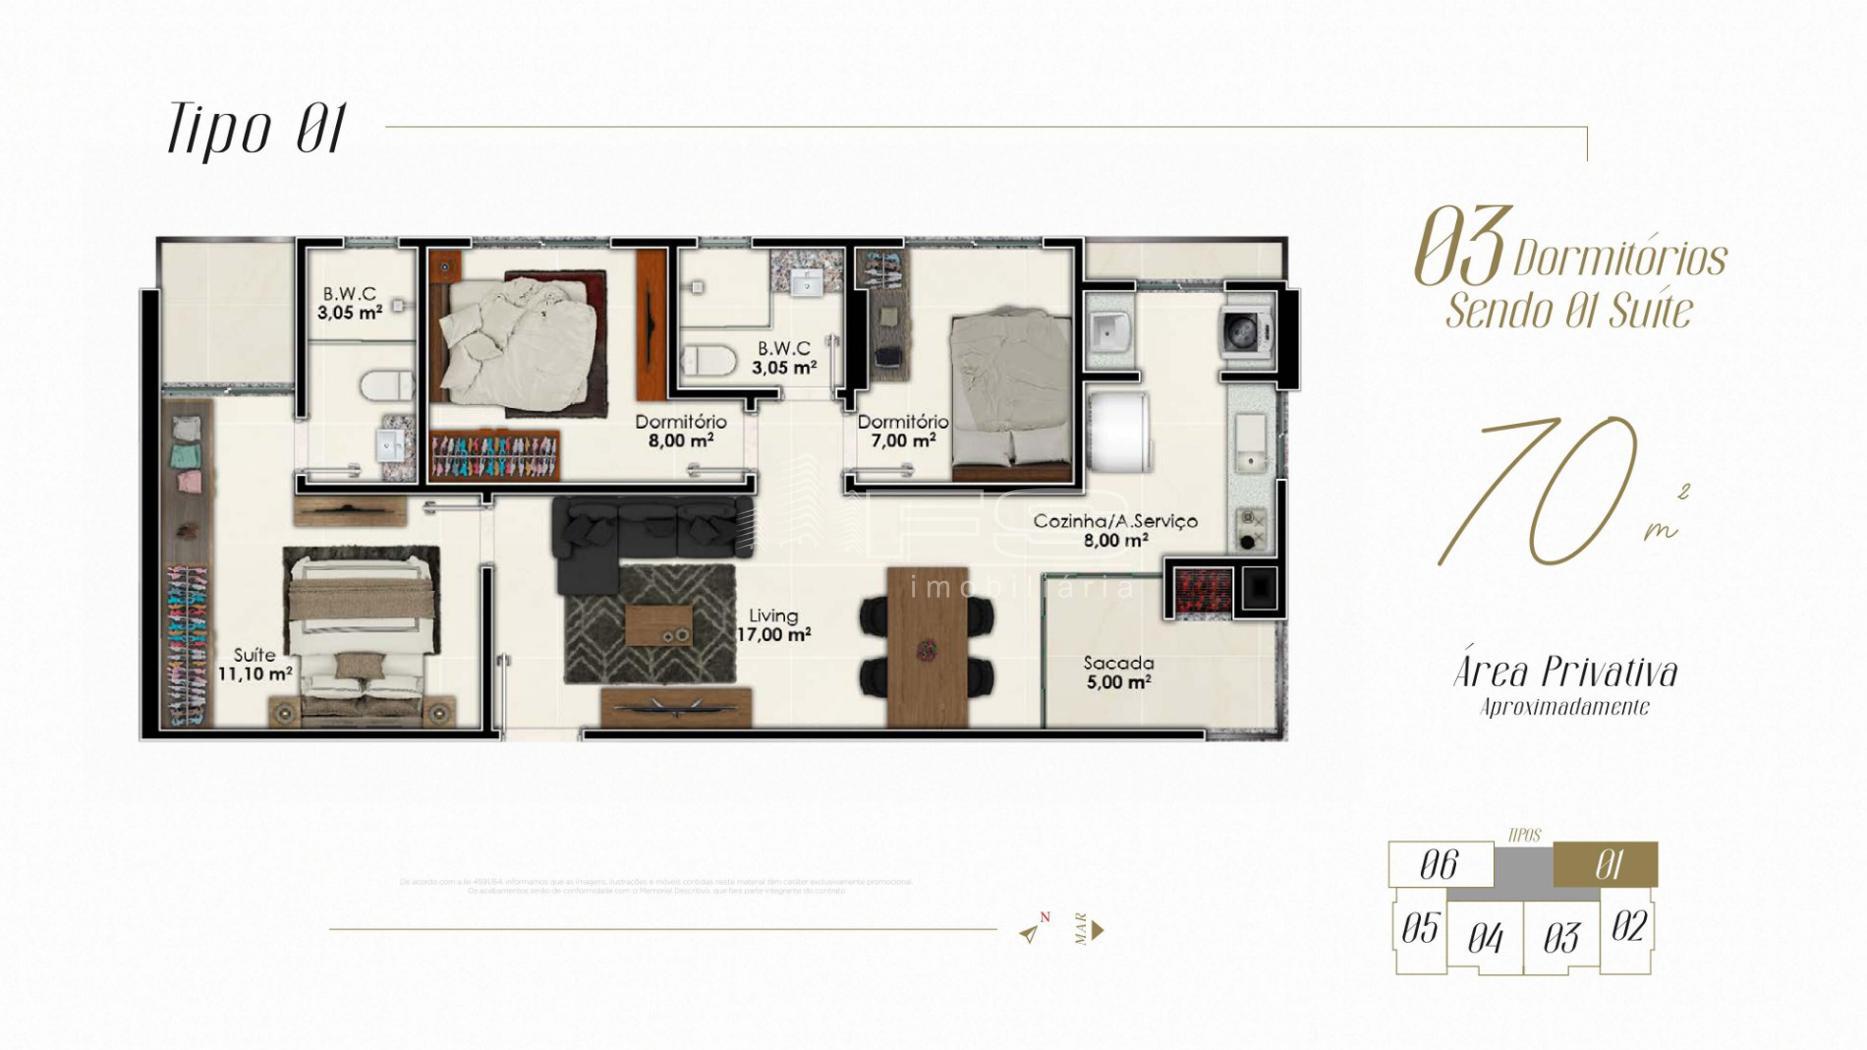 Apartamento com 3 Dormitórios à venda, 70 m² por R$ 696.479,00